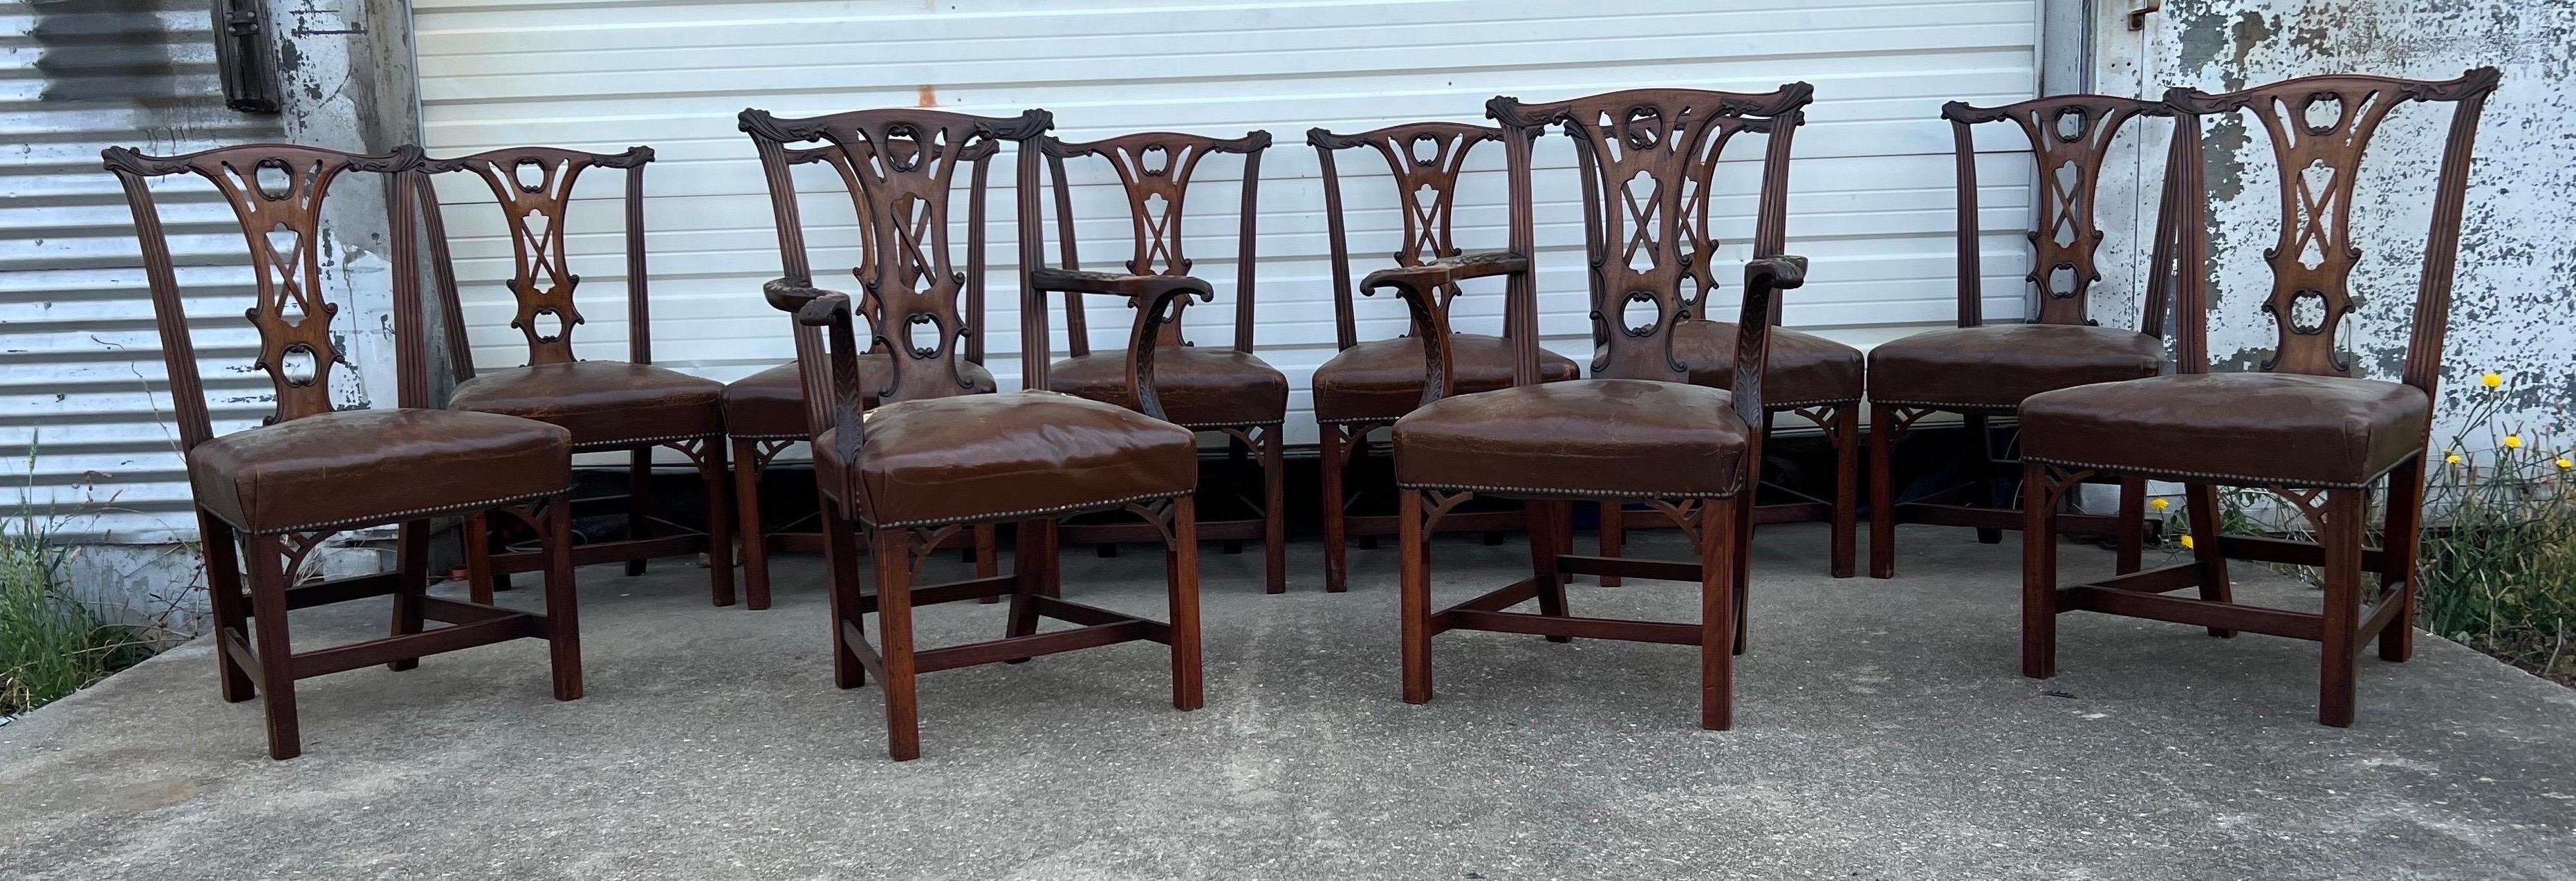 Très bel ensemble de 10 chaises de salle à manger chippendale irlandaises du 18e siècle. Fabriquées à l'époque de l'acajou de premier choix, ces chaises présentent des sculptures très bien exécutées et des traverses à tenons. 

8 chaises d'appoint